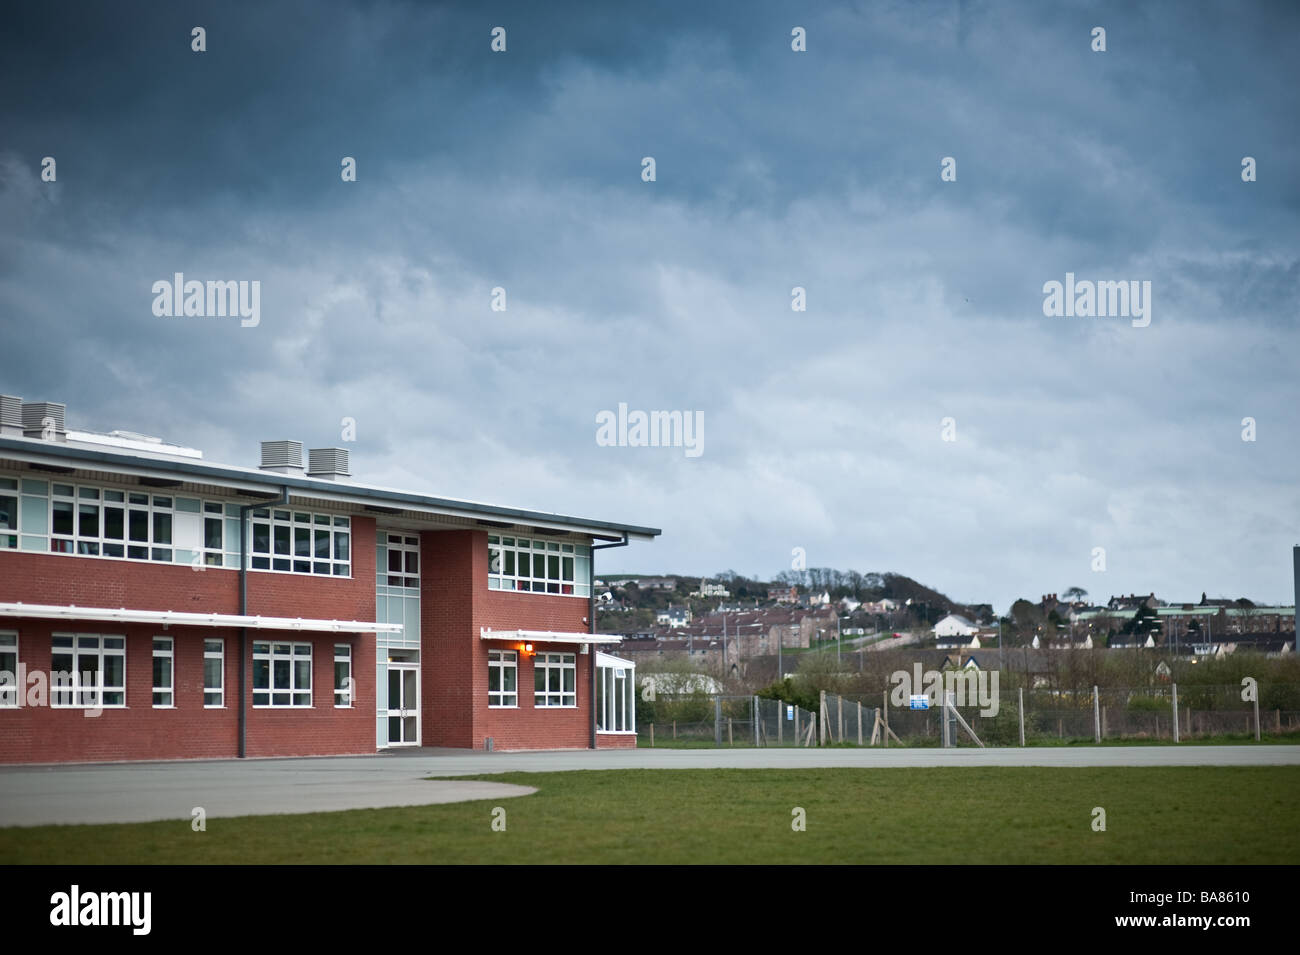 L'école secondaire Penweddig moyen gallois construit avec l'argent de PFI (Private Finance Initiative Aberystwyth Wales UK Banque D'Images